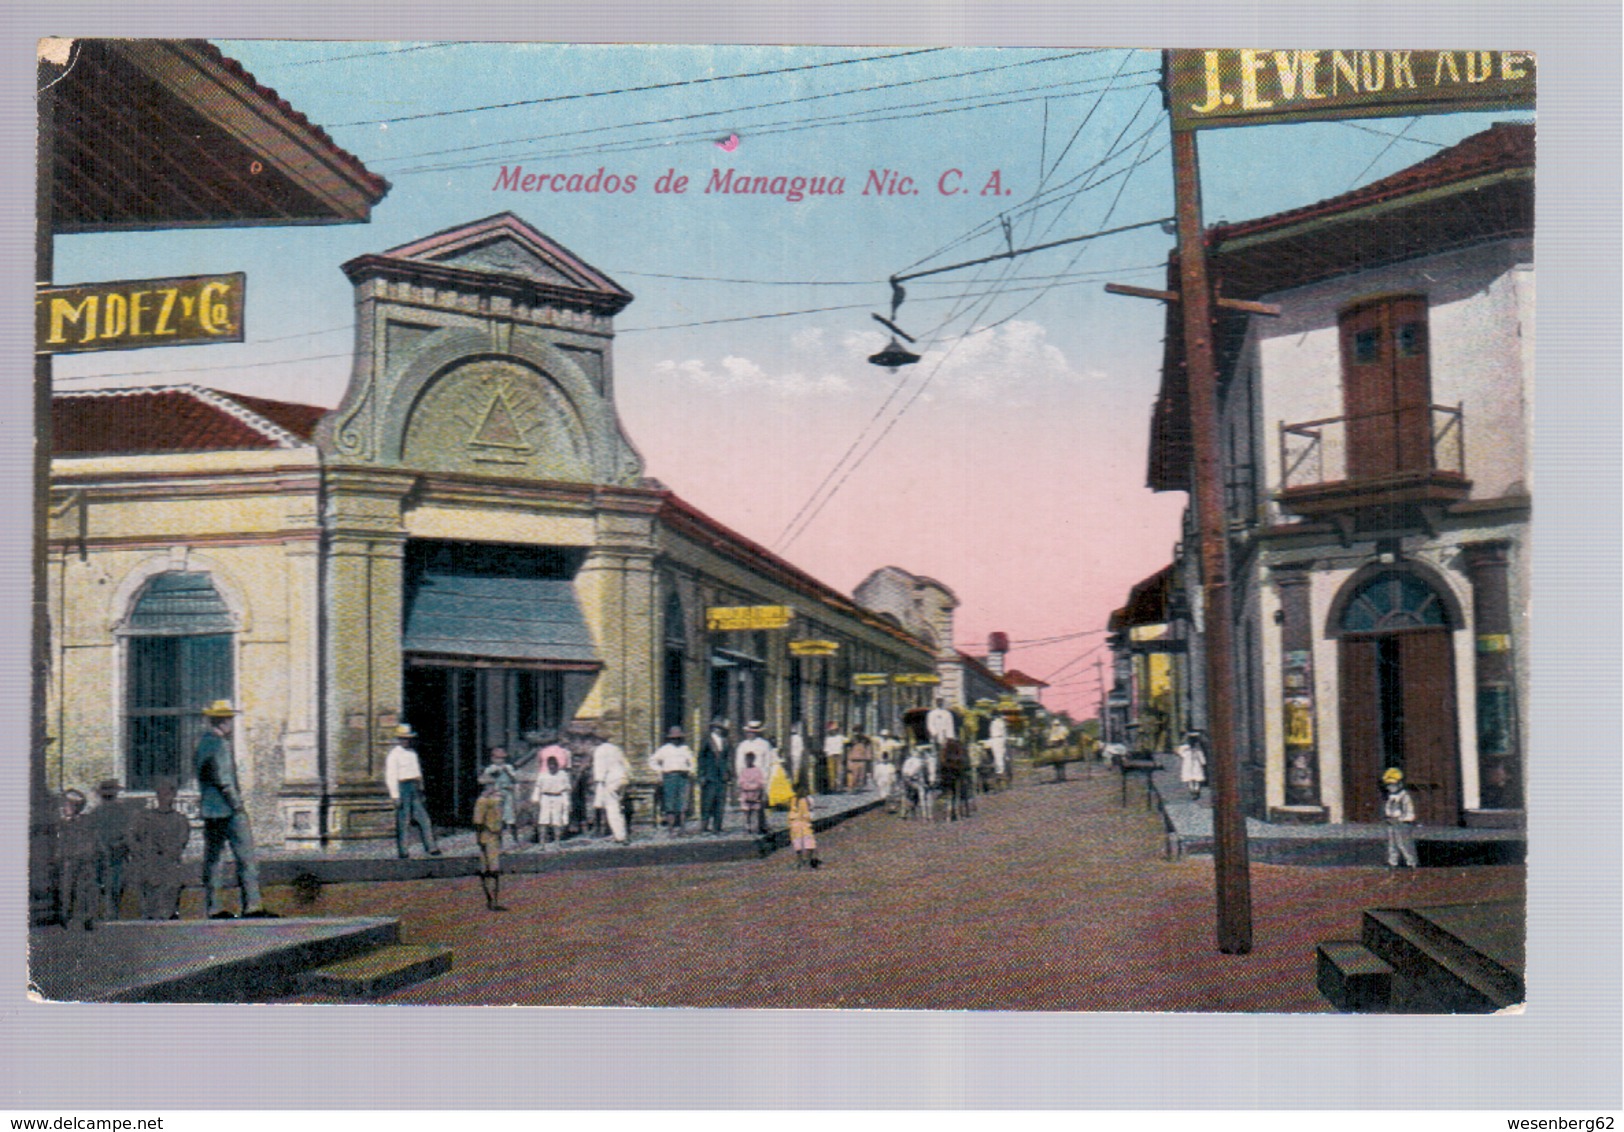 Nicaragua Mercados De Managua Nic. C.A., Le Marche Ca 1930 Old Postcard - Nicaragua